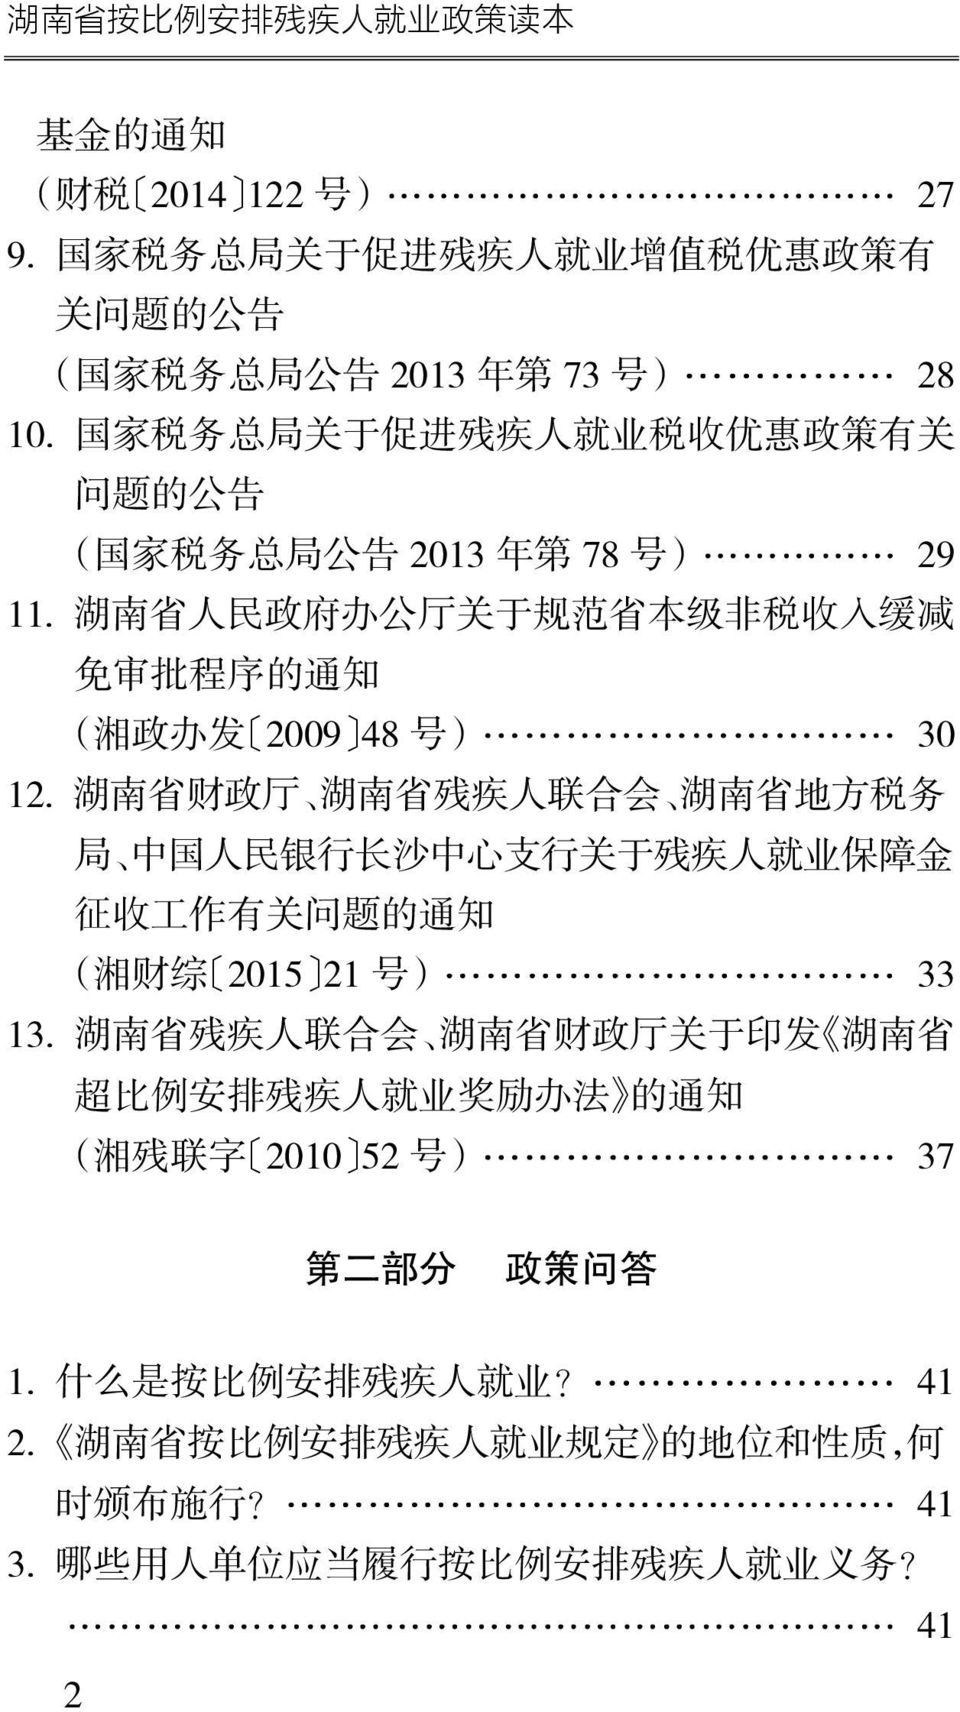 湖 南 省 人 民 政 府 办 公 厅 关 于 规 范 省 本 级 非 税 收 入 缓 减 免 审 批 程 序 的 通 知 ( 湘 政 办 发 2009 48 号 ) 30 12.